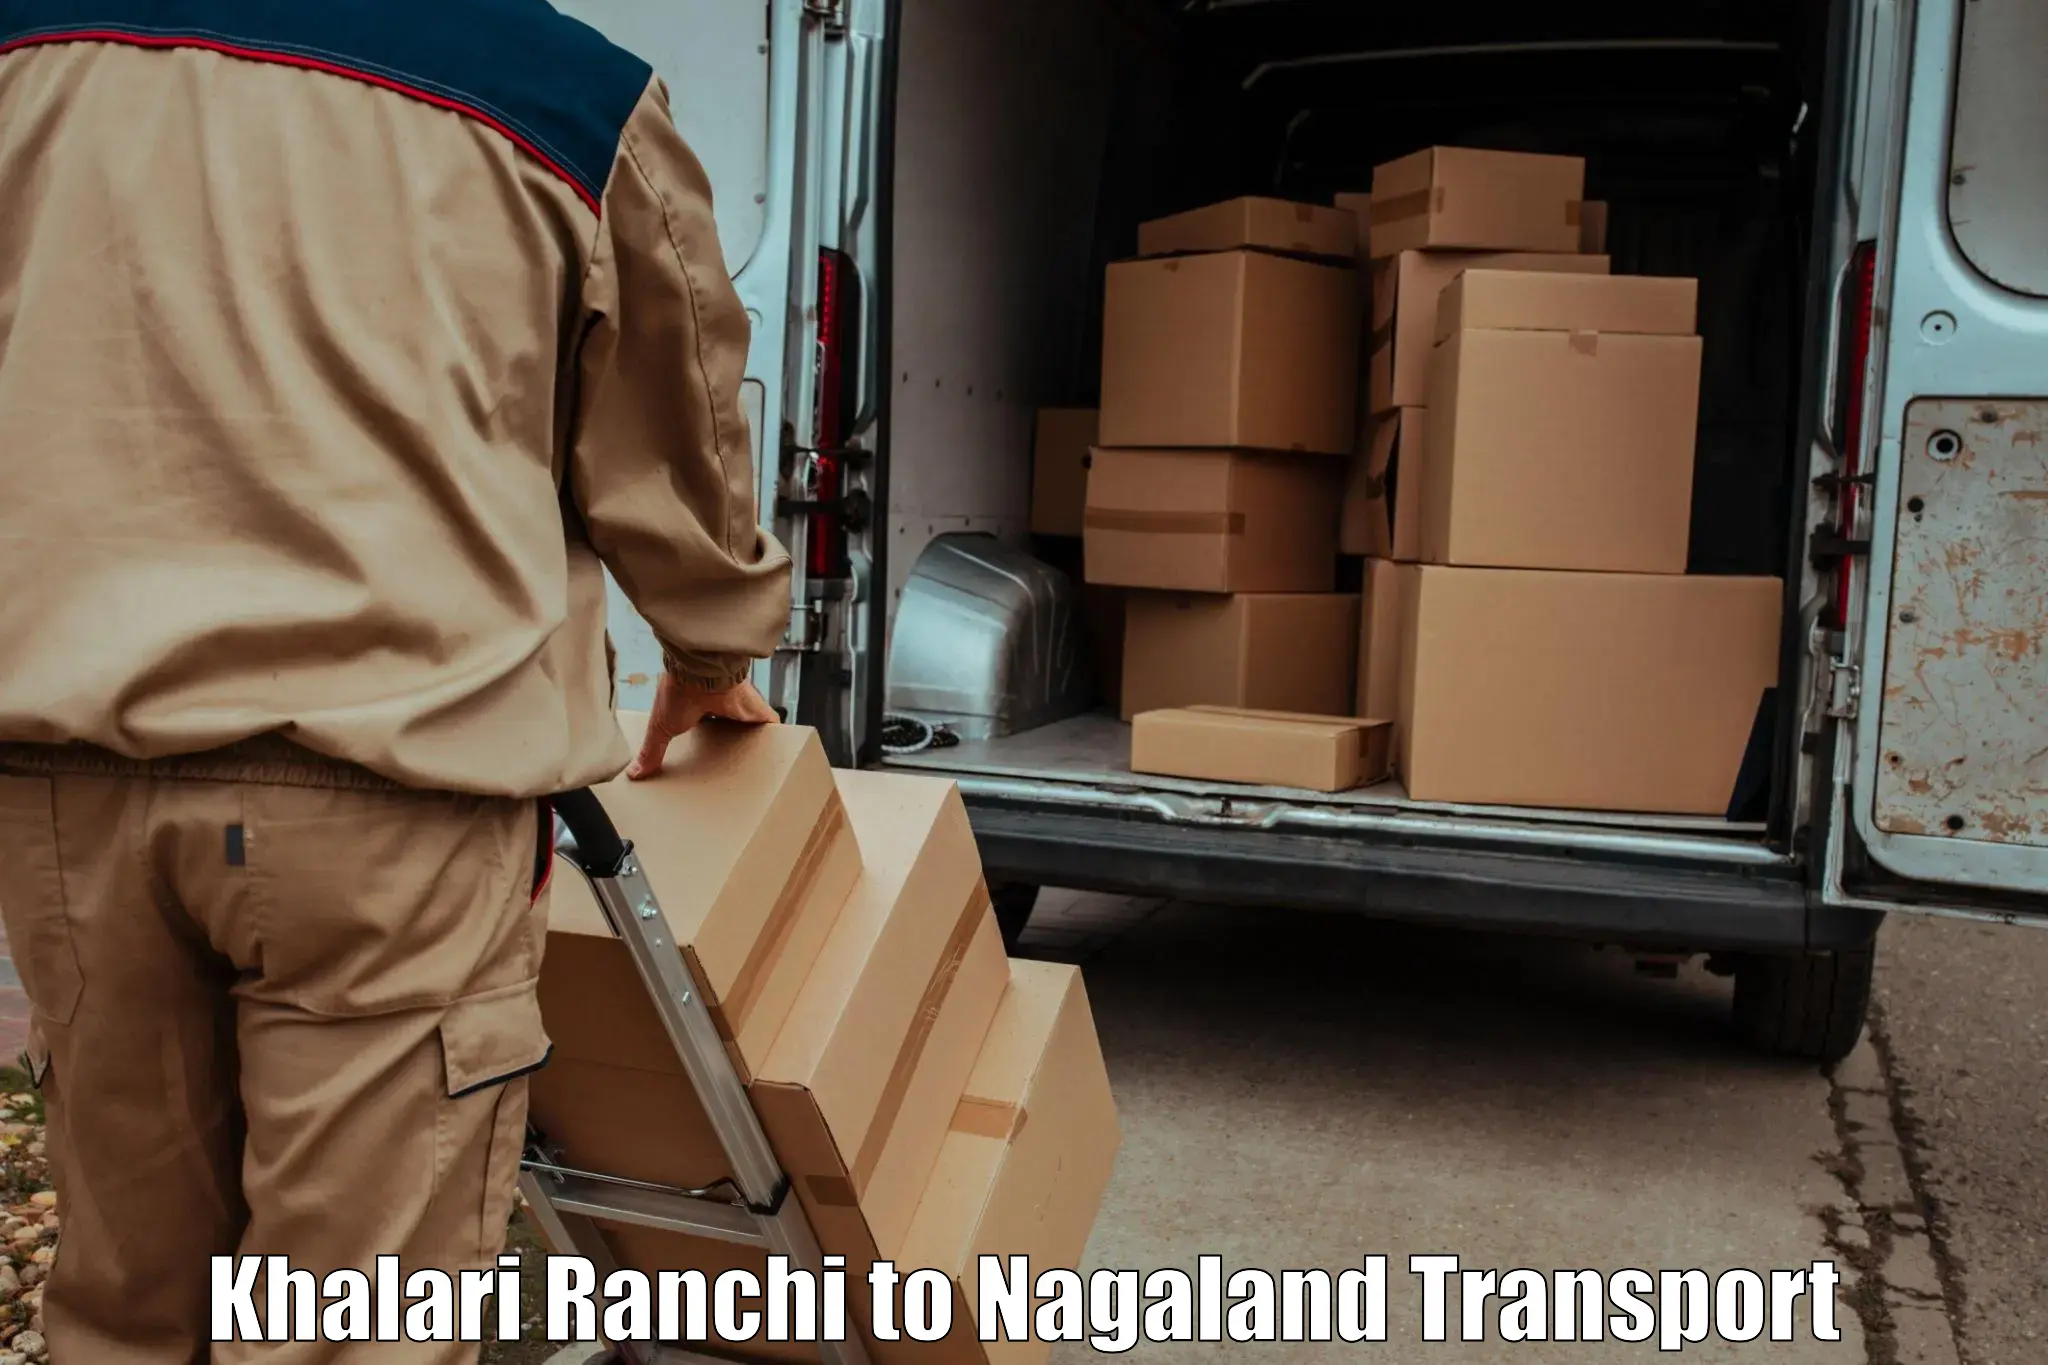 Land transport services Khalari Ranchi to Longleng